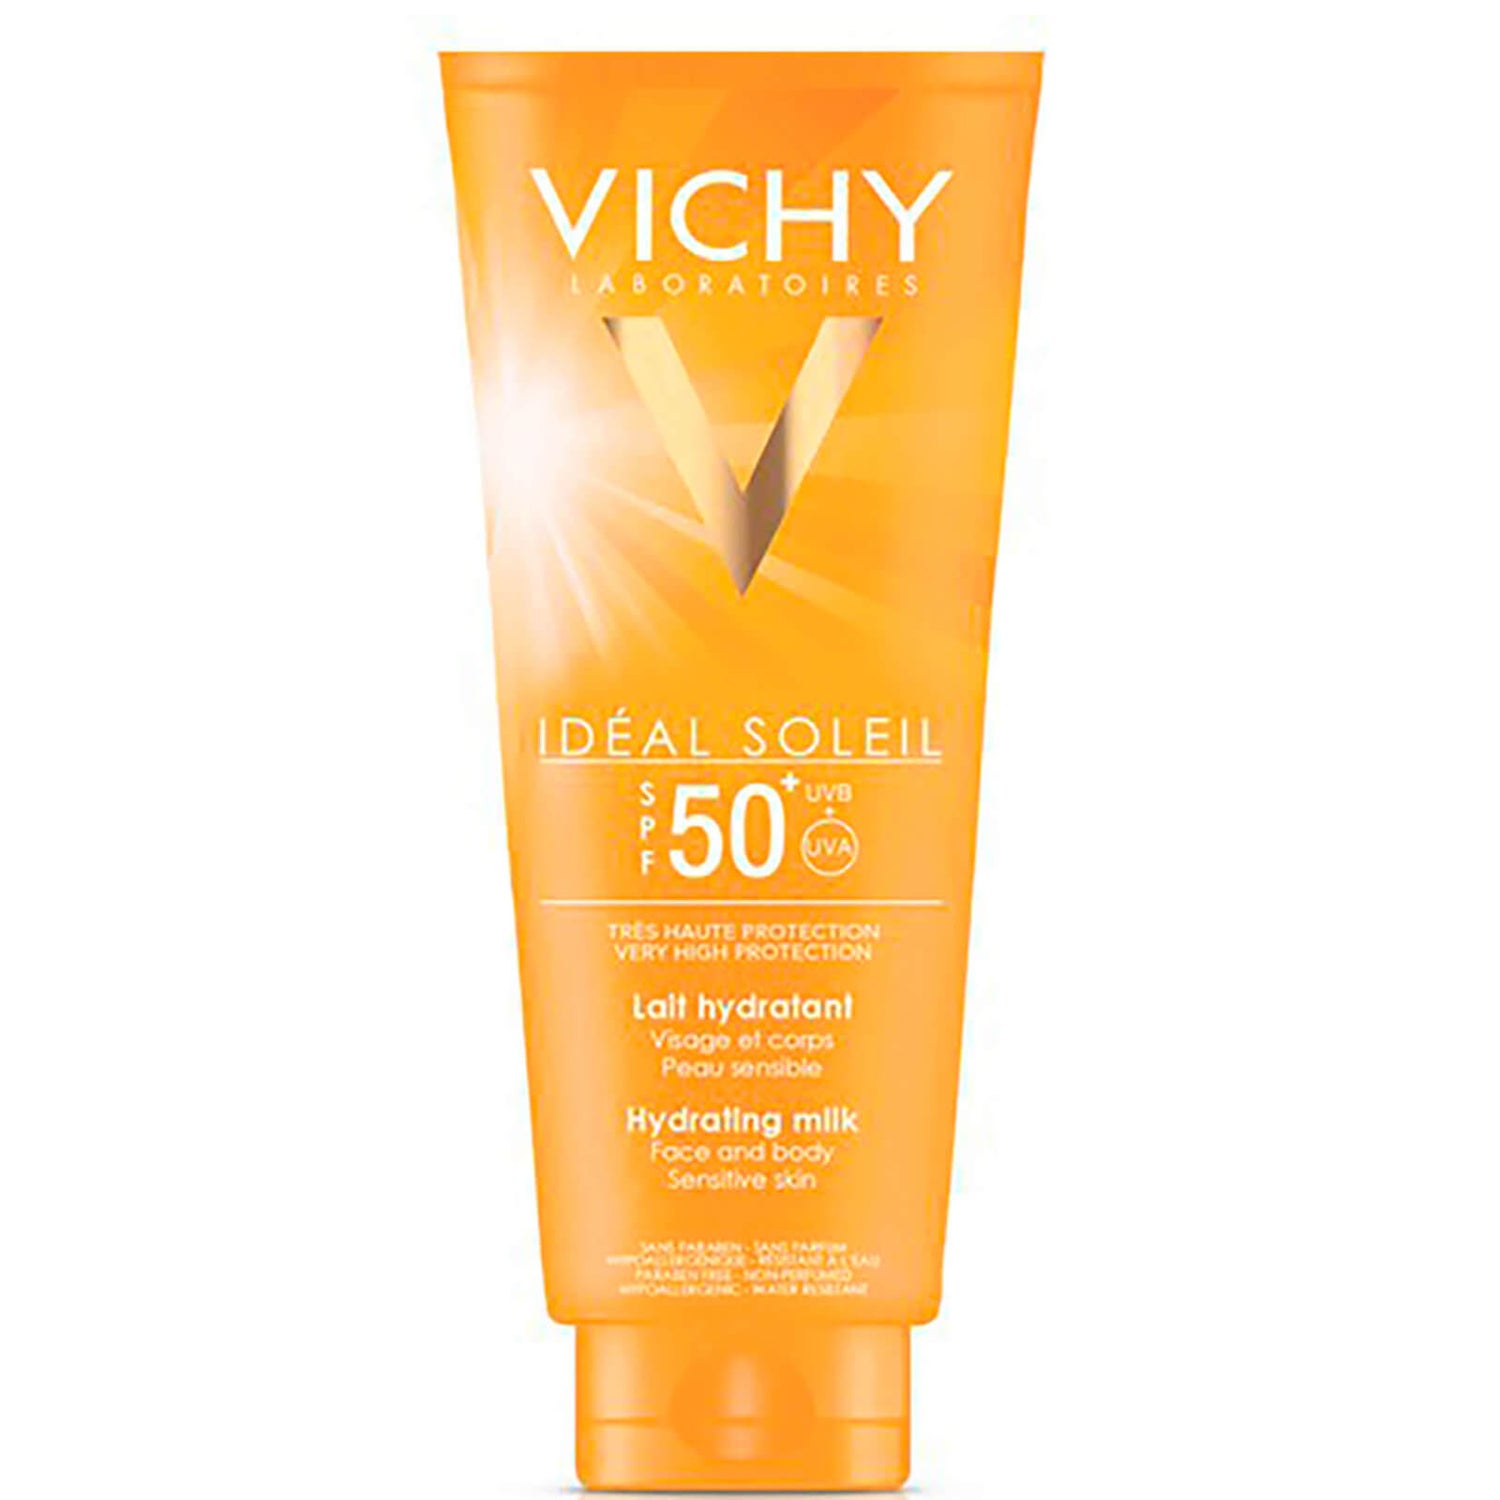 Vichy Ideal Soleil loción rostro y cuerpo SPF 50 300ml